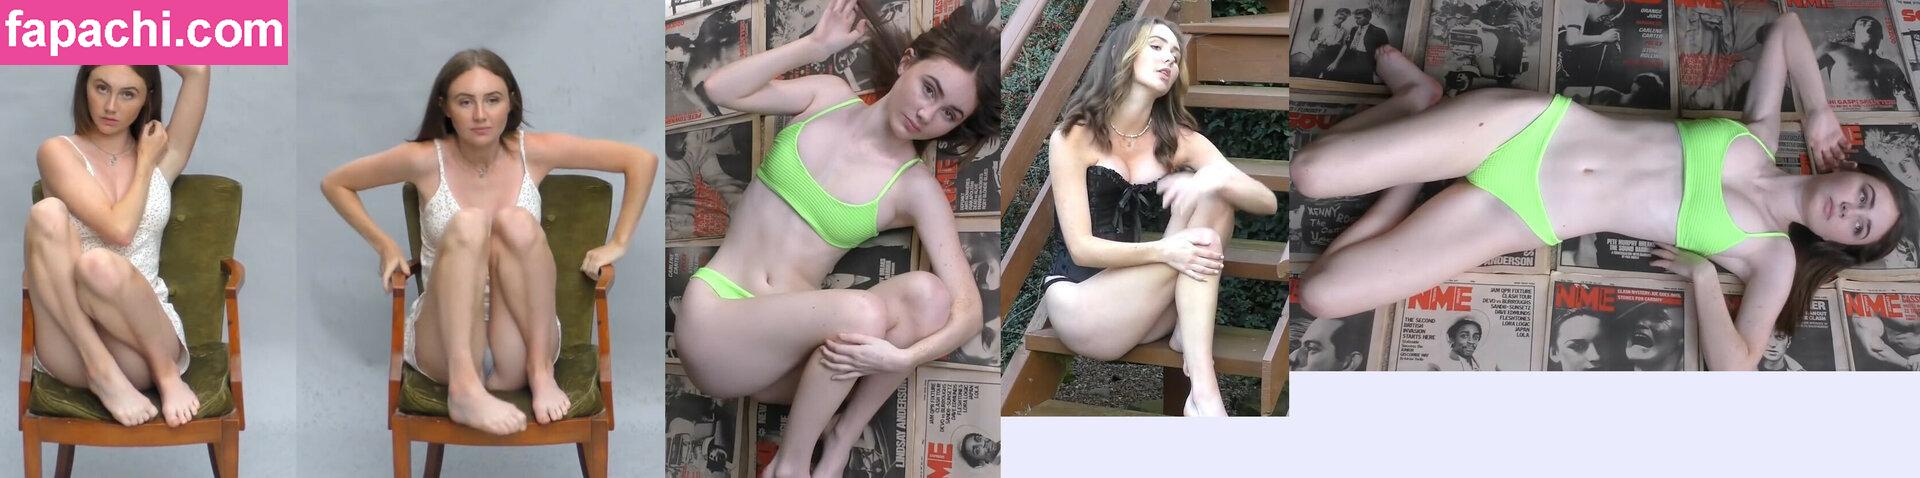 Weekly Imogen / Emma / imogenwho / weeklyimogen leaked nude photo #0005 from OnlyFans/Patreon